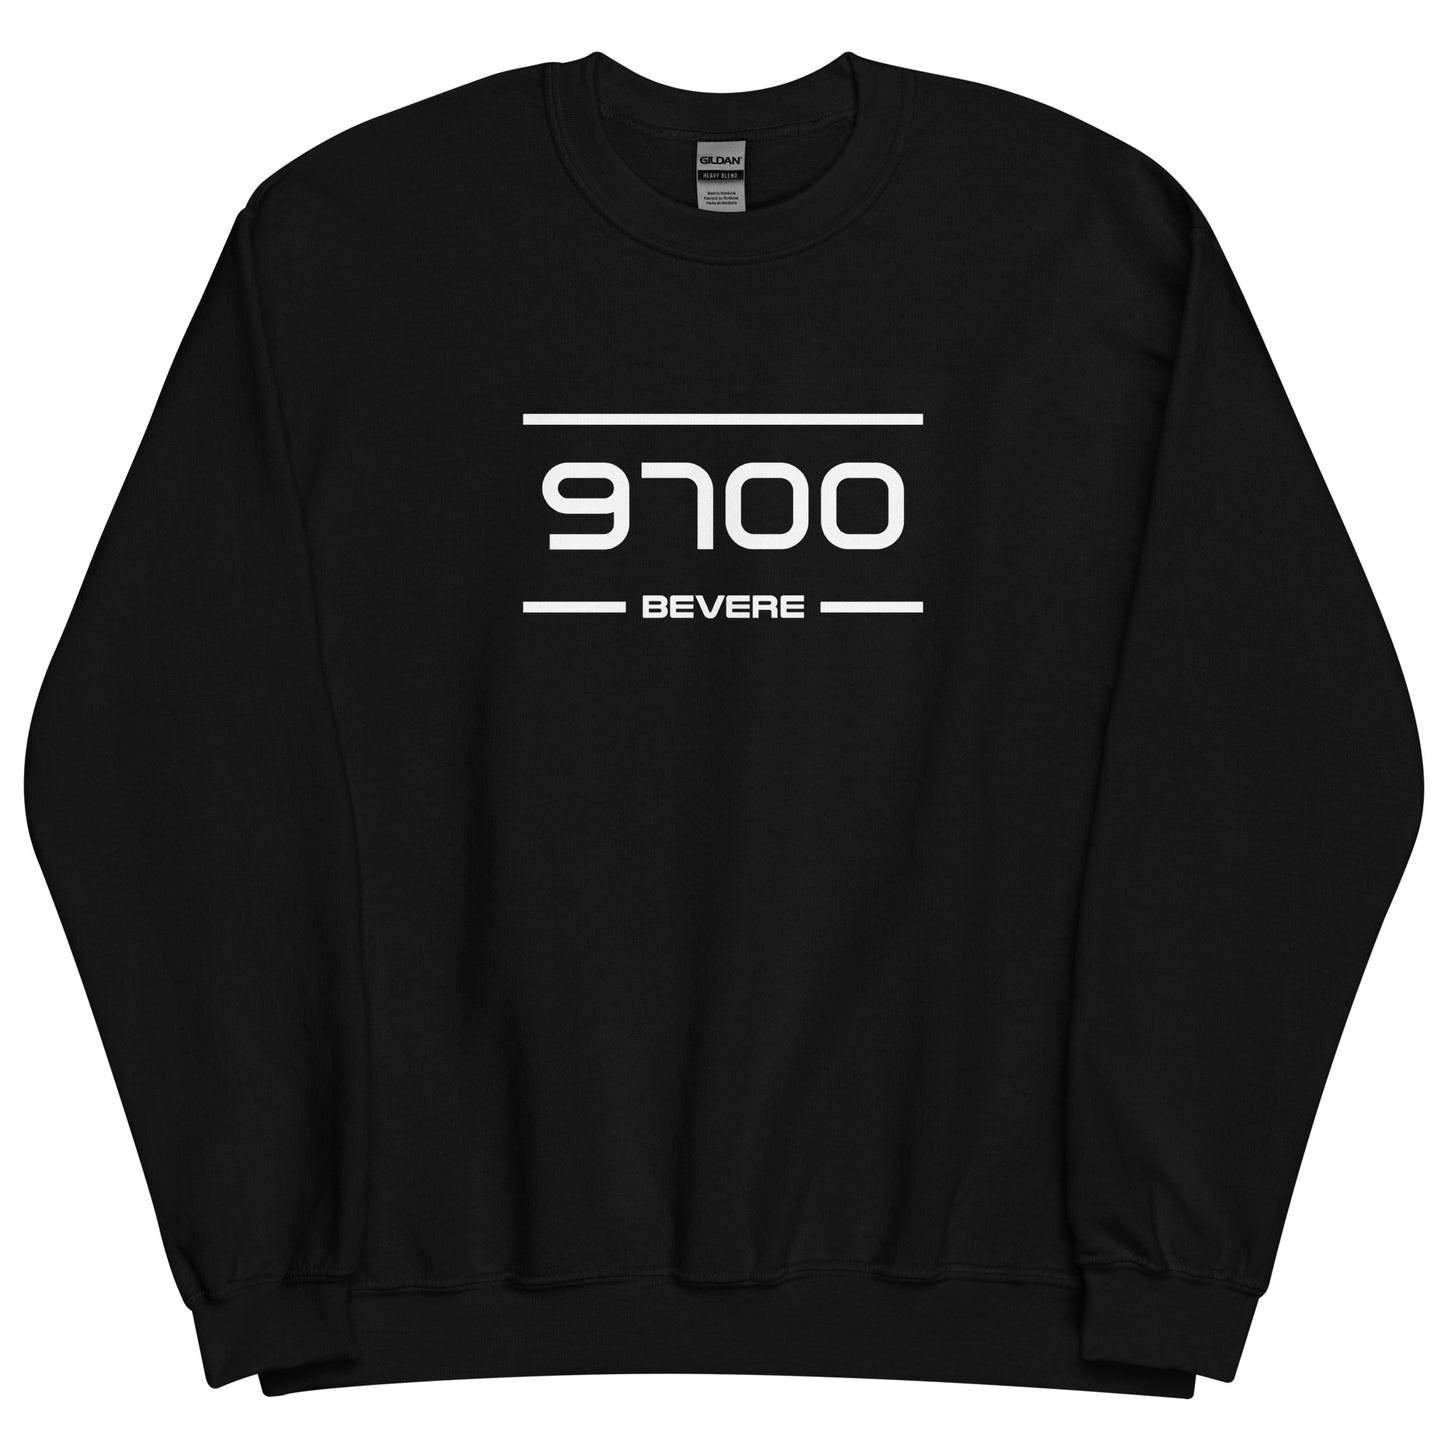 Sweater - 9700 - Bevere (M/V)